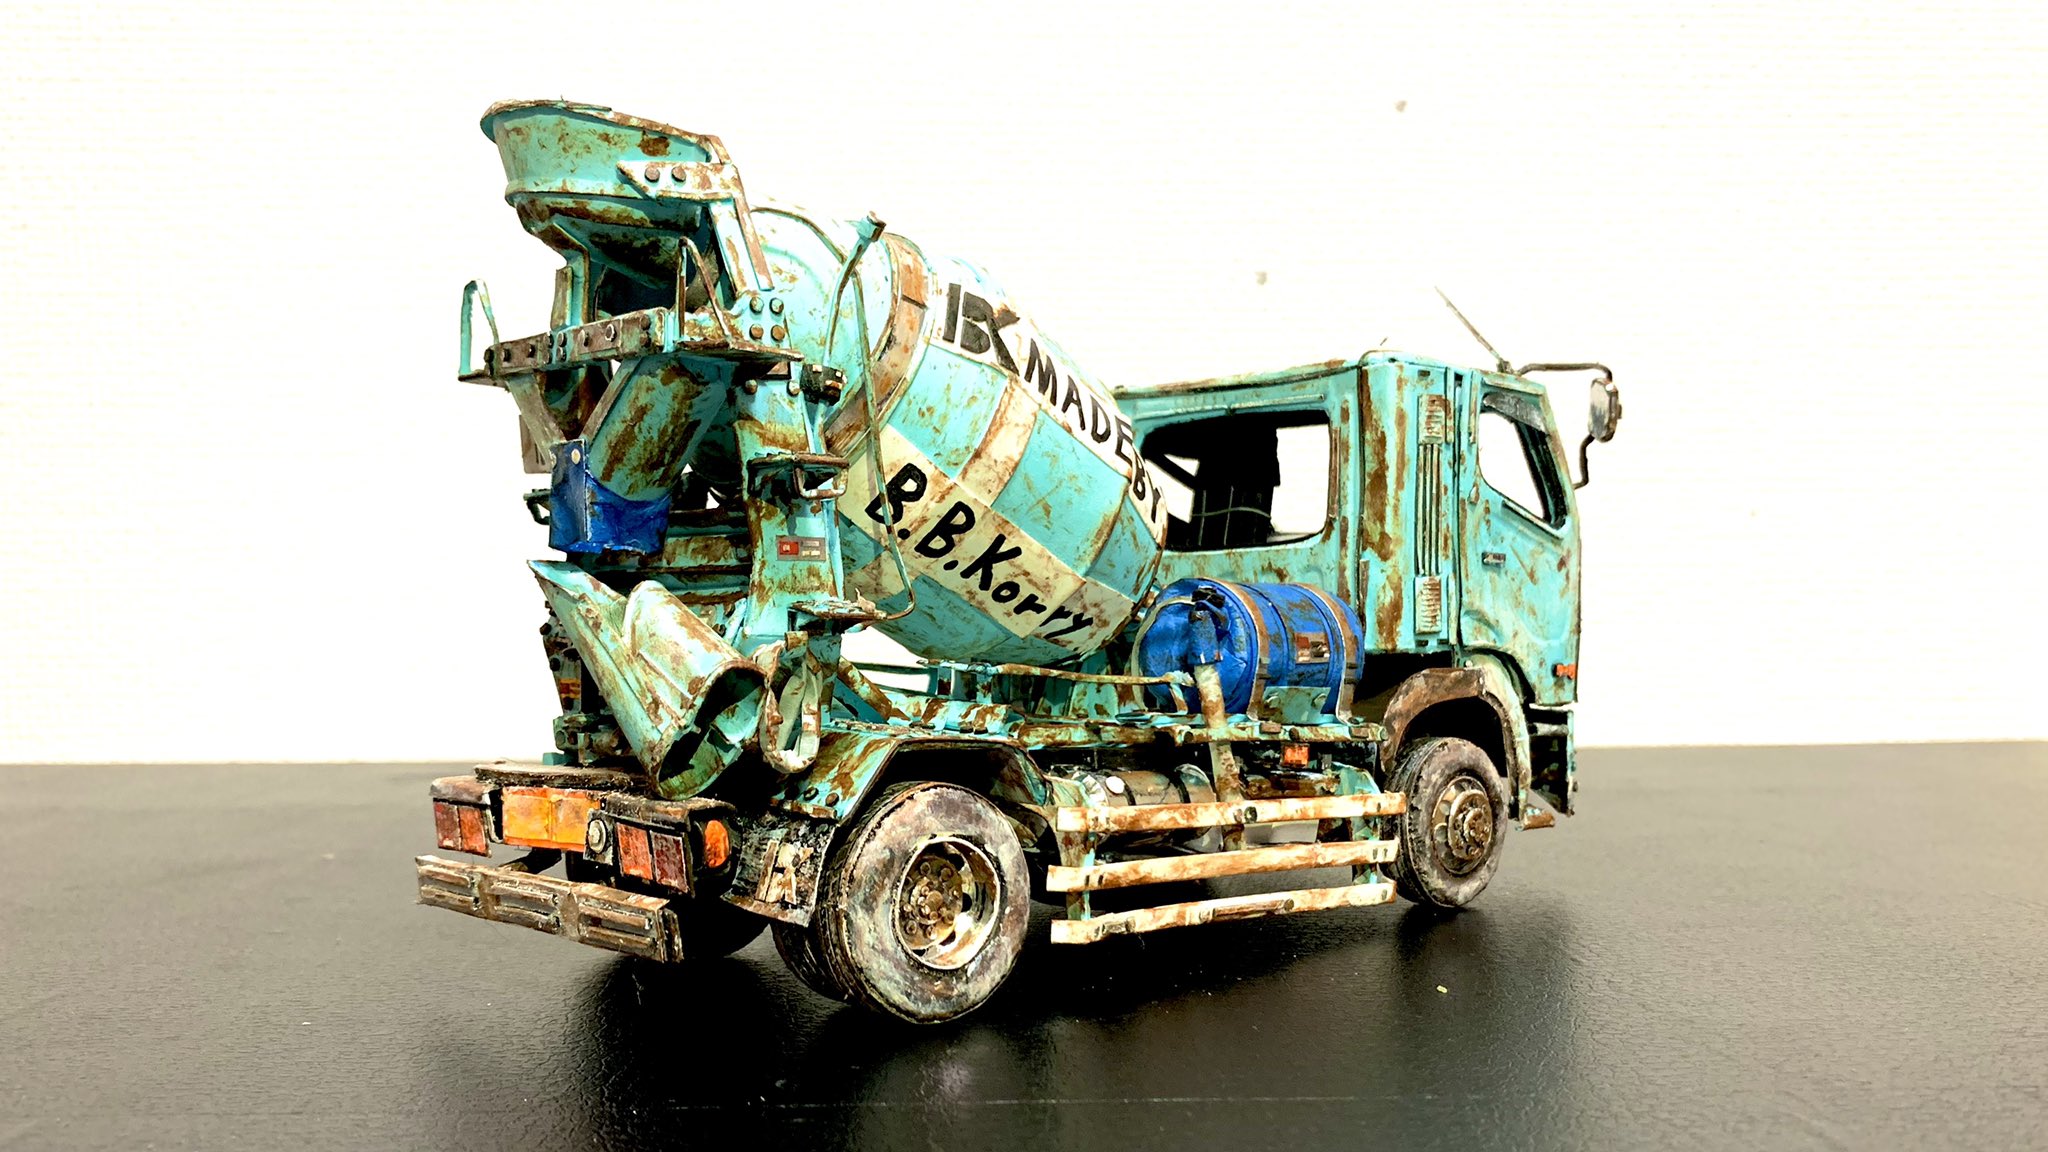 纸模高玩打造废弃风格卡车模型 造型极度逼真网友热赞